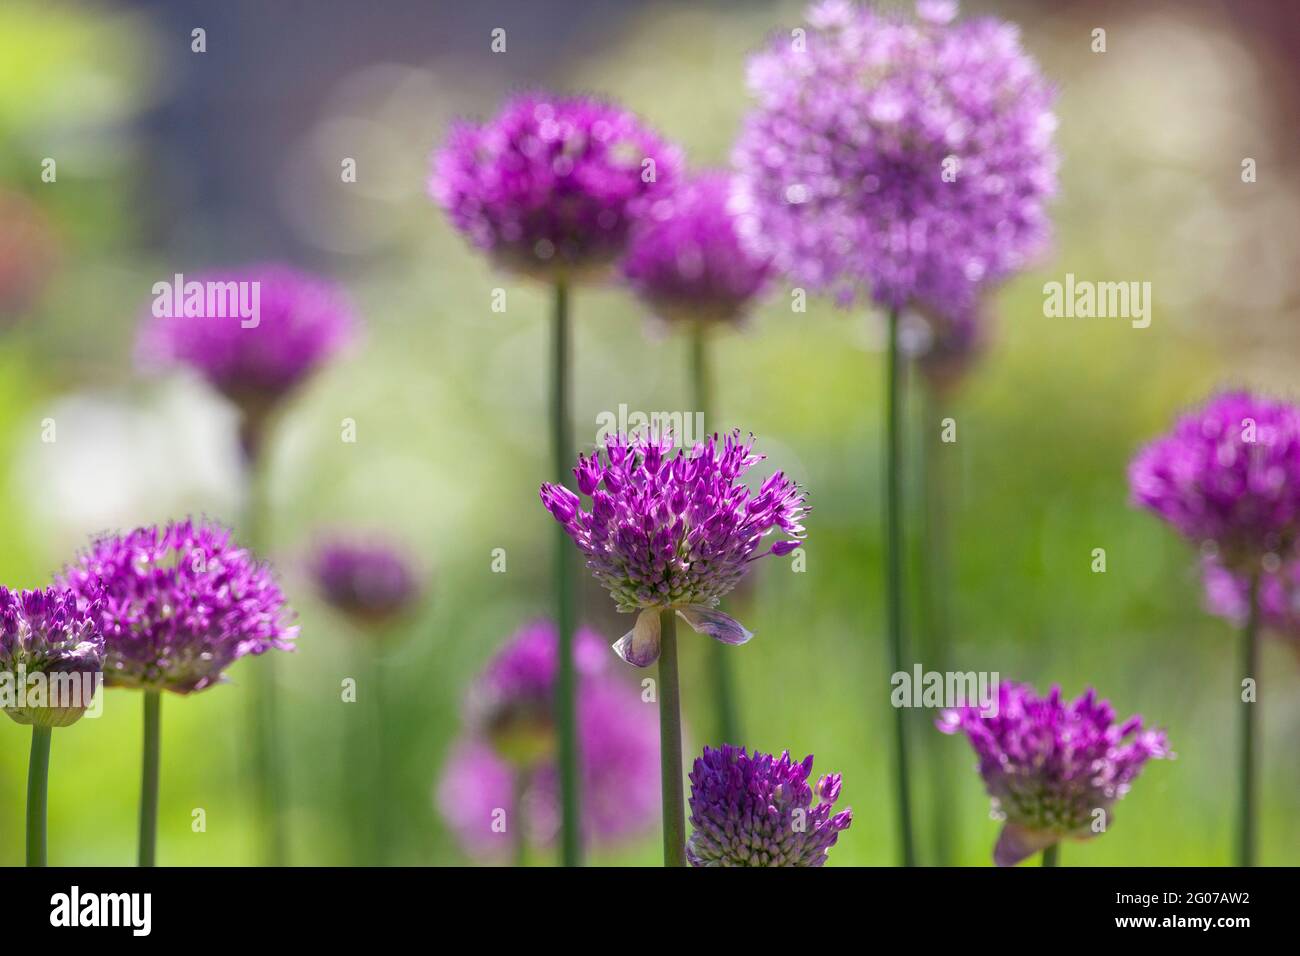 Henley-on-Thames, Reino Unido: Alliums de la sensación púrpura que crecen en ollas en una terraza de la azotea a principios del sol del verano. Anna Watson/Alamy Foto de stock